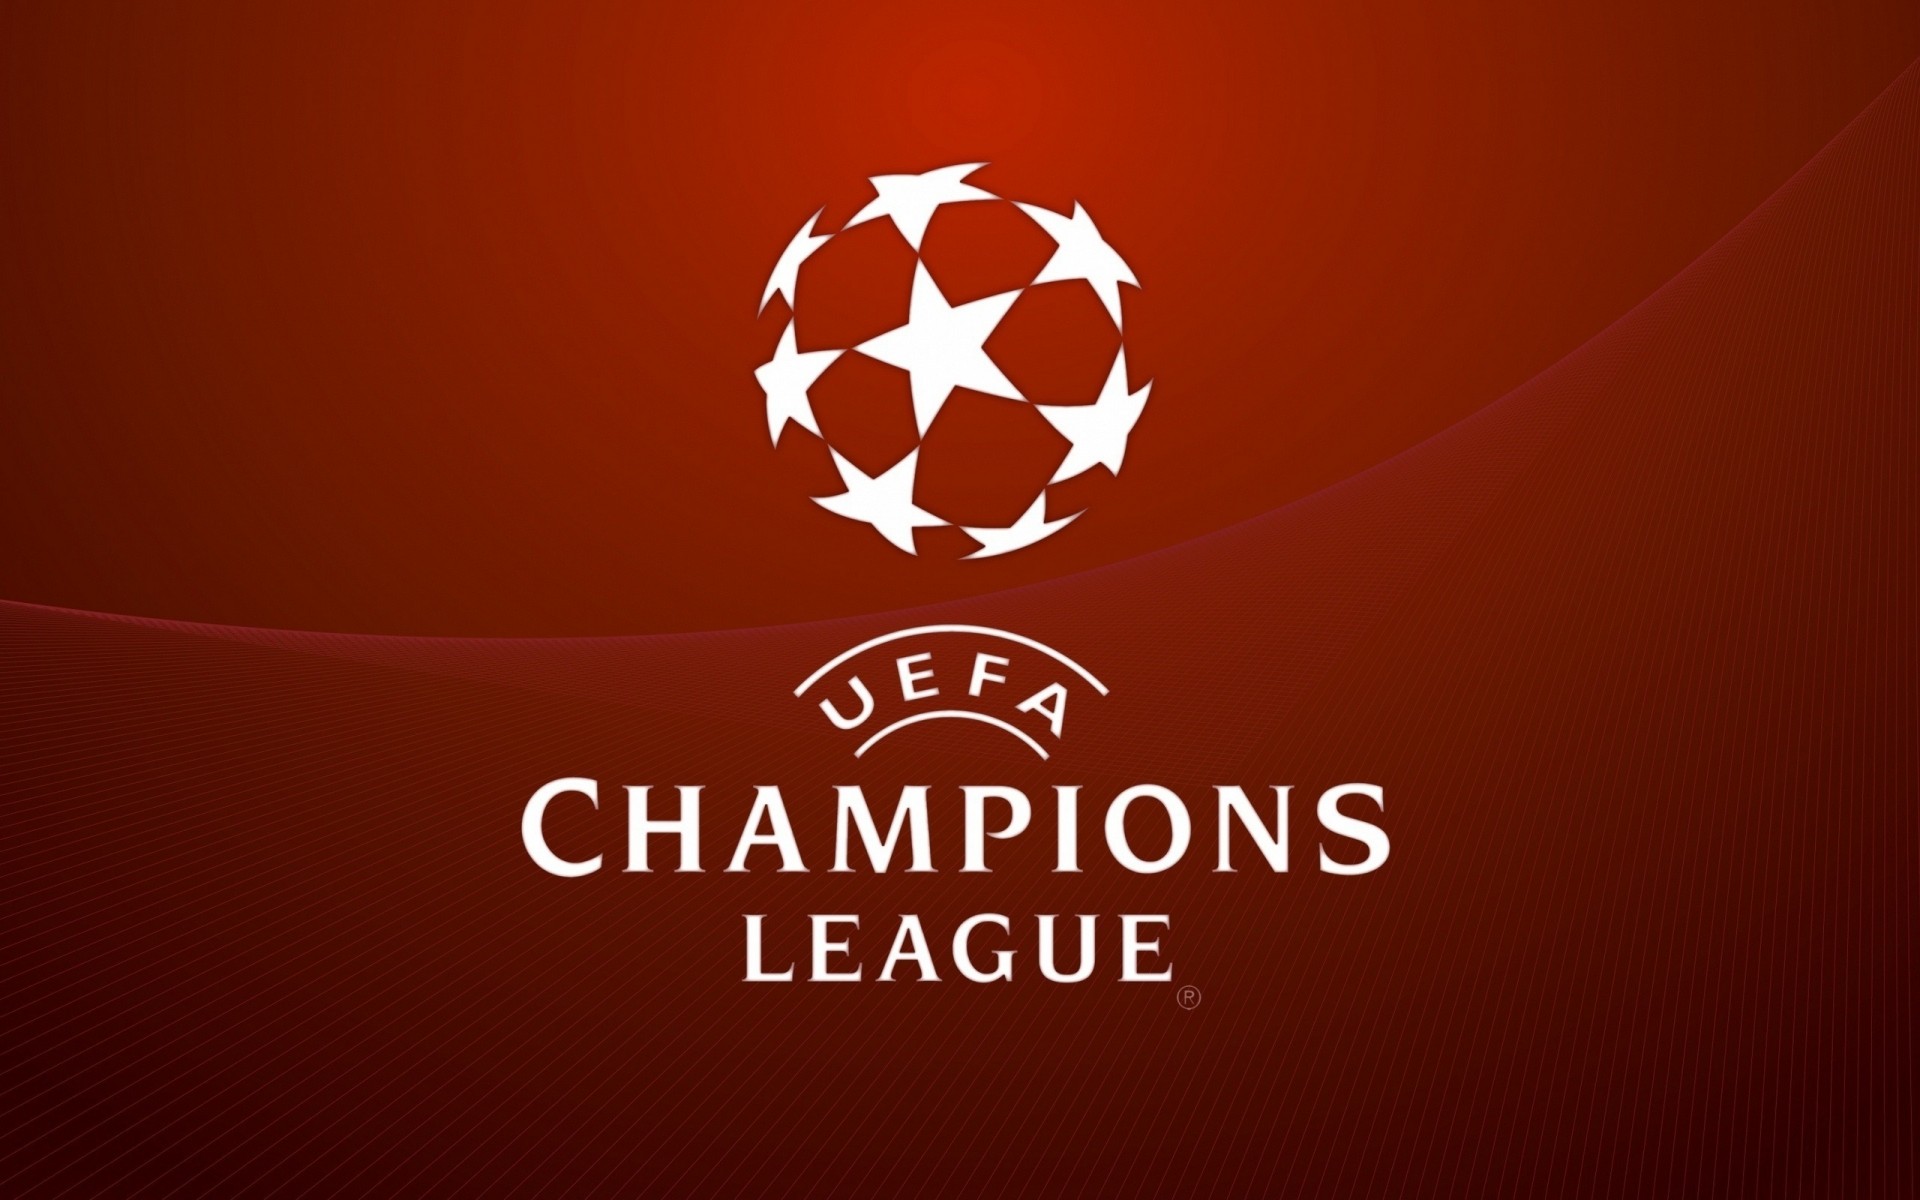 Логотип Лиги чемпионов - обои на телефон бесплатно.